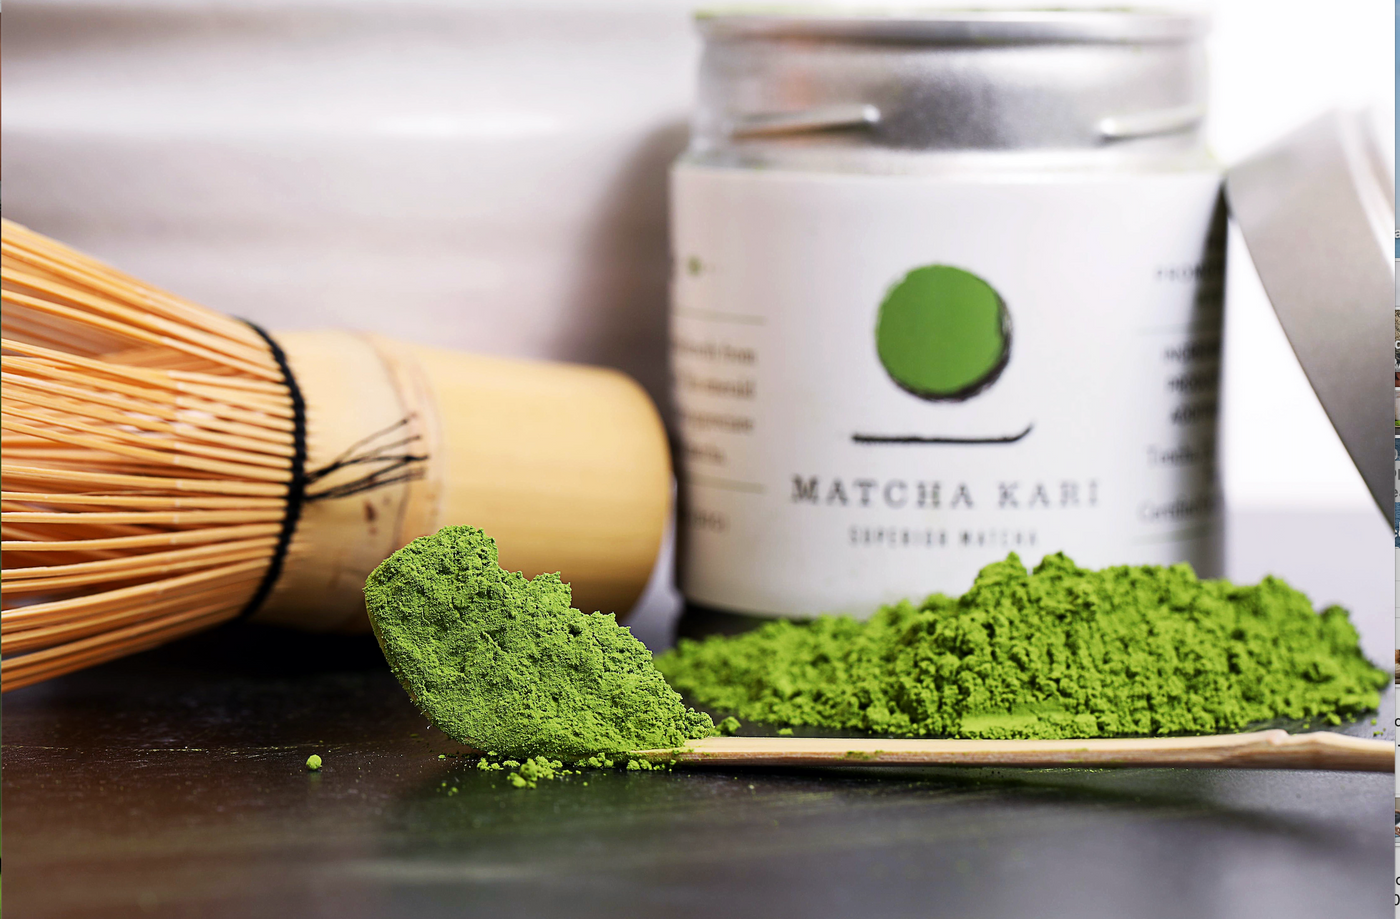 Matcha and cholesterol: Matcha green tea lowers bad cholesterol levels. 